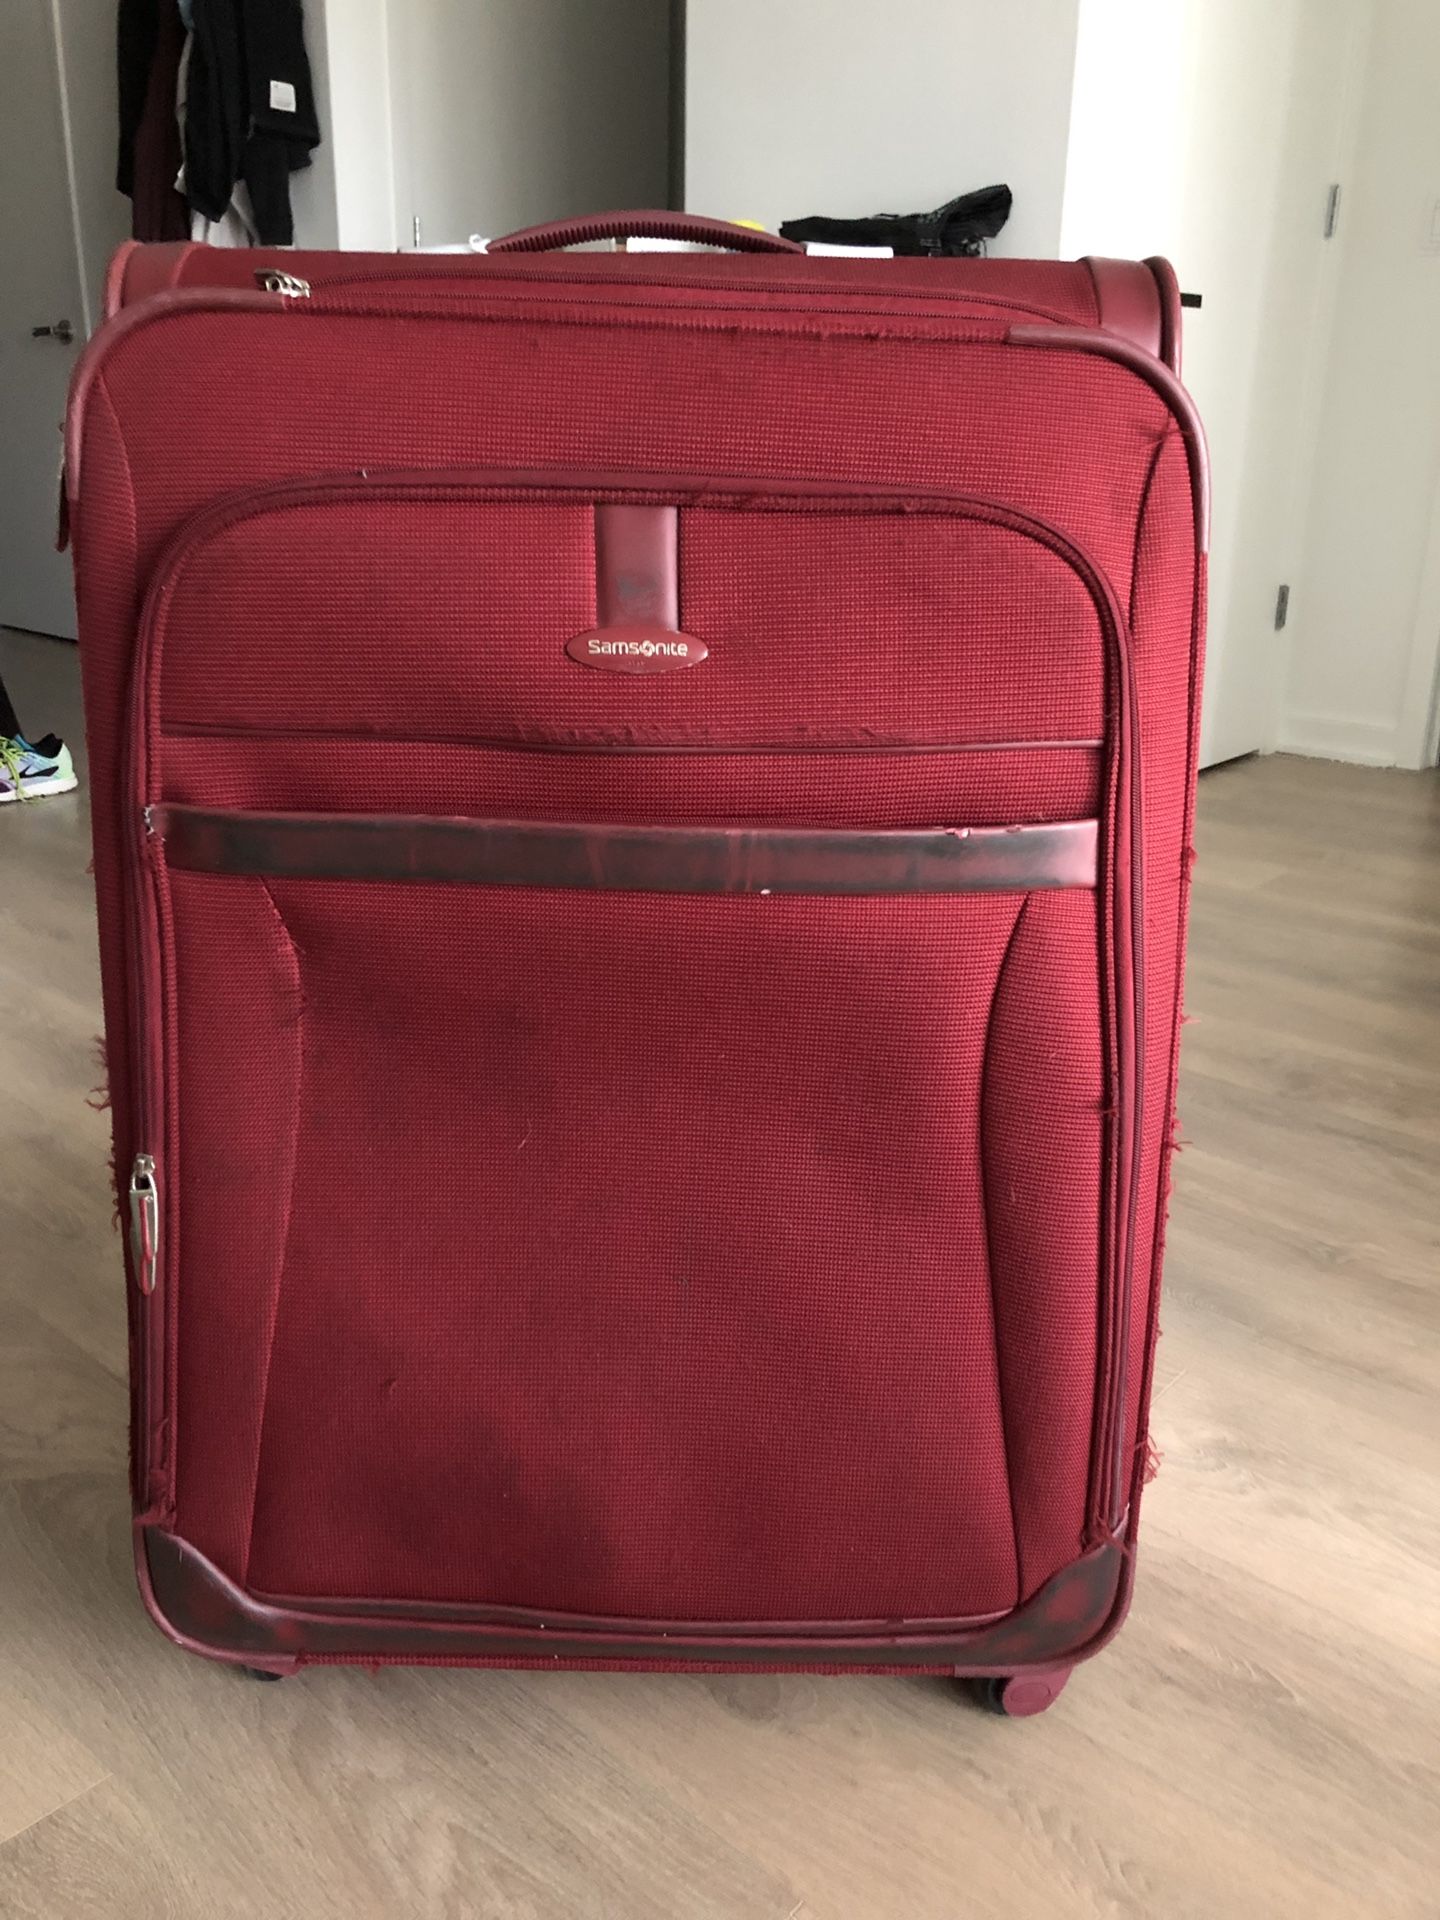 27 inch Samsonite suitcase